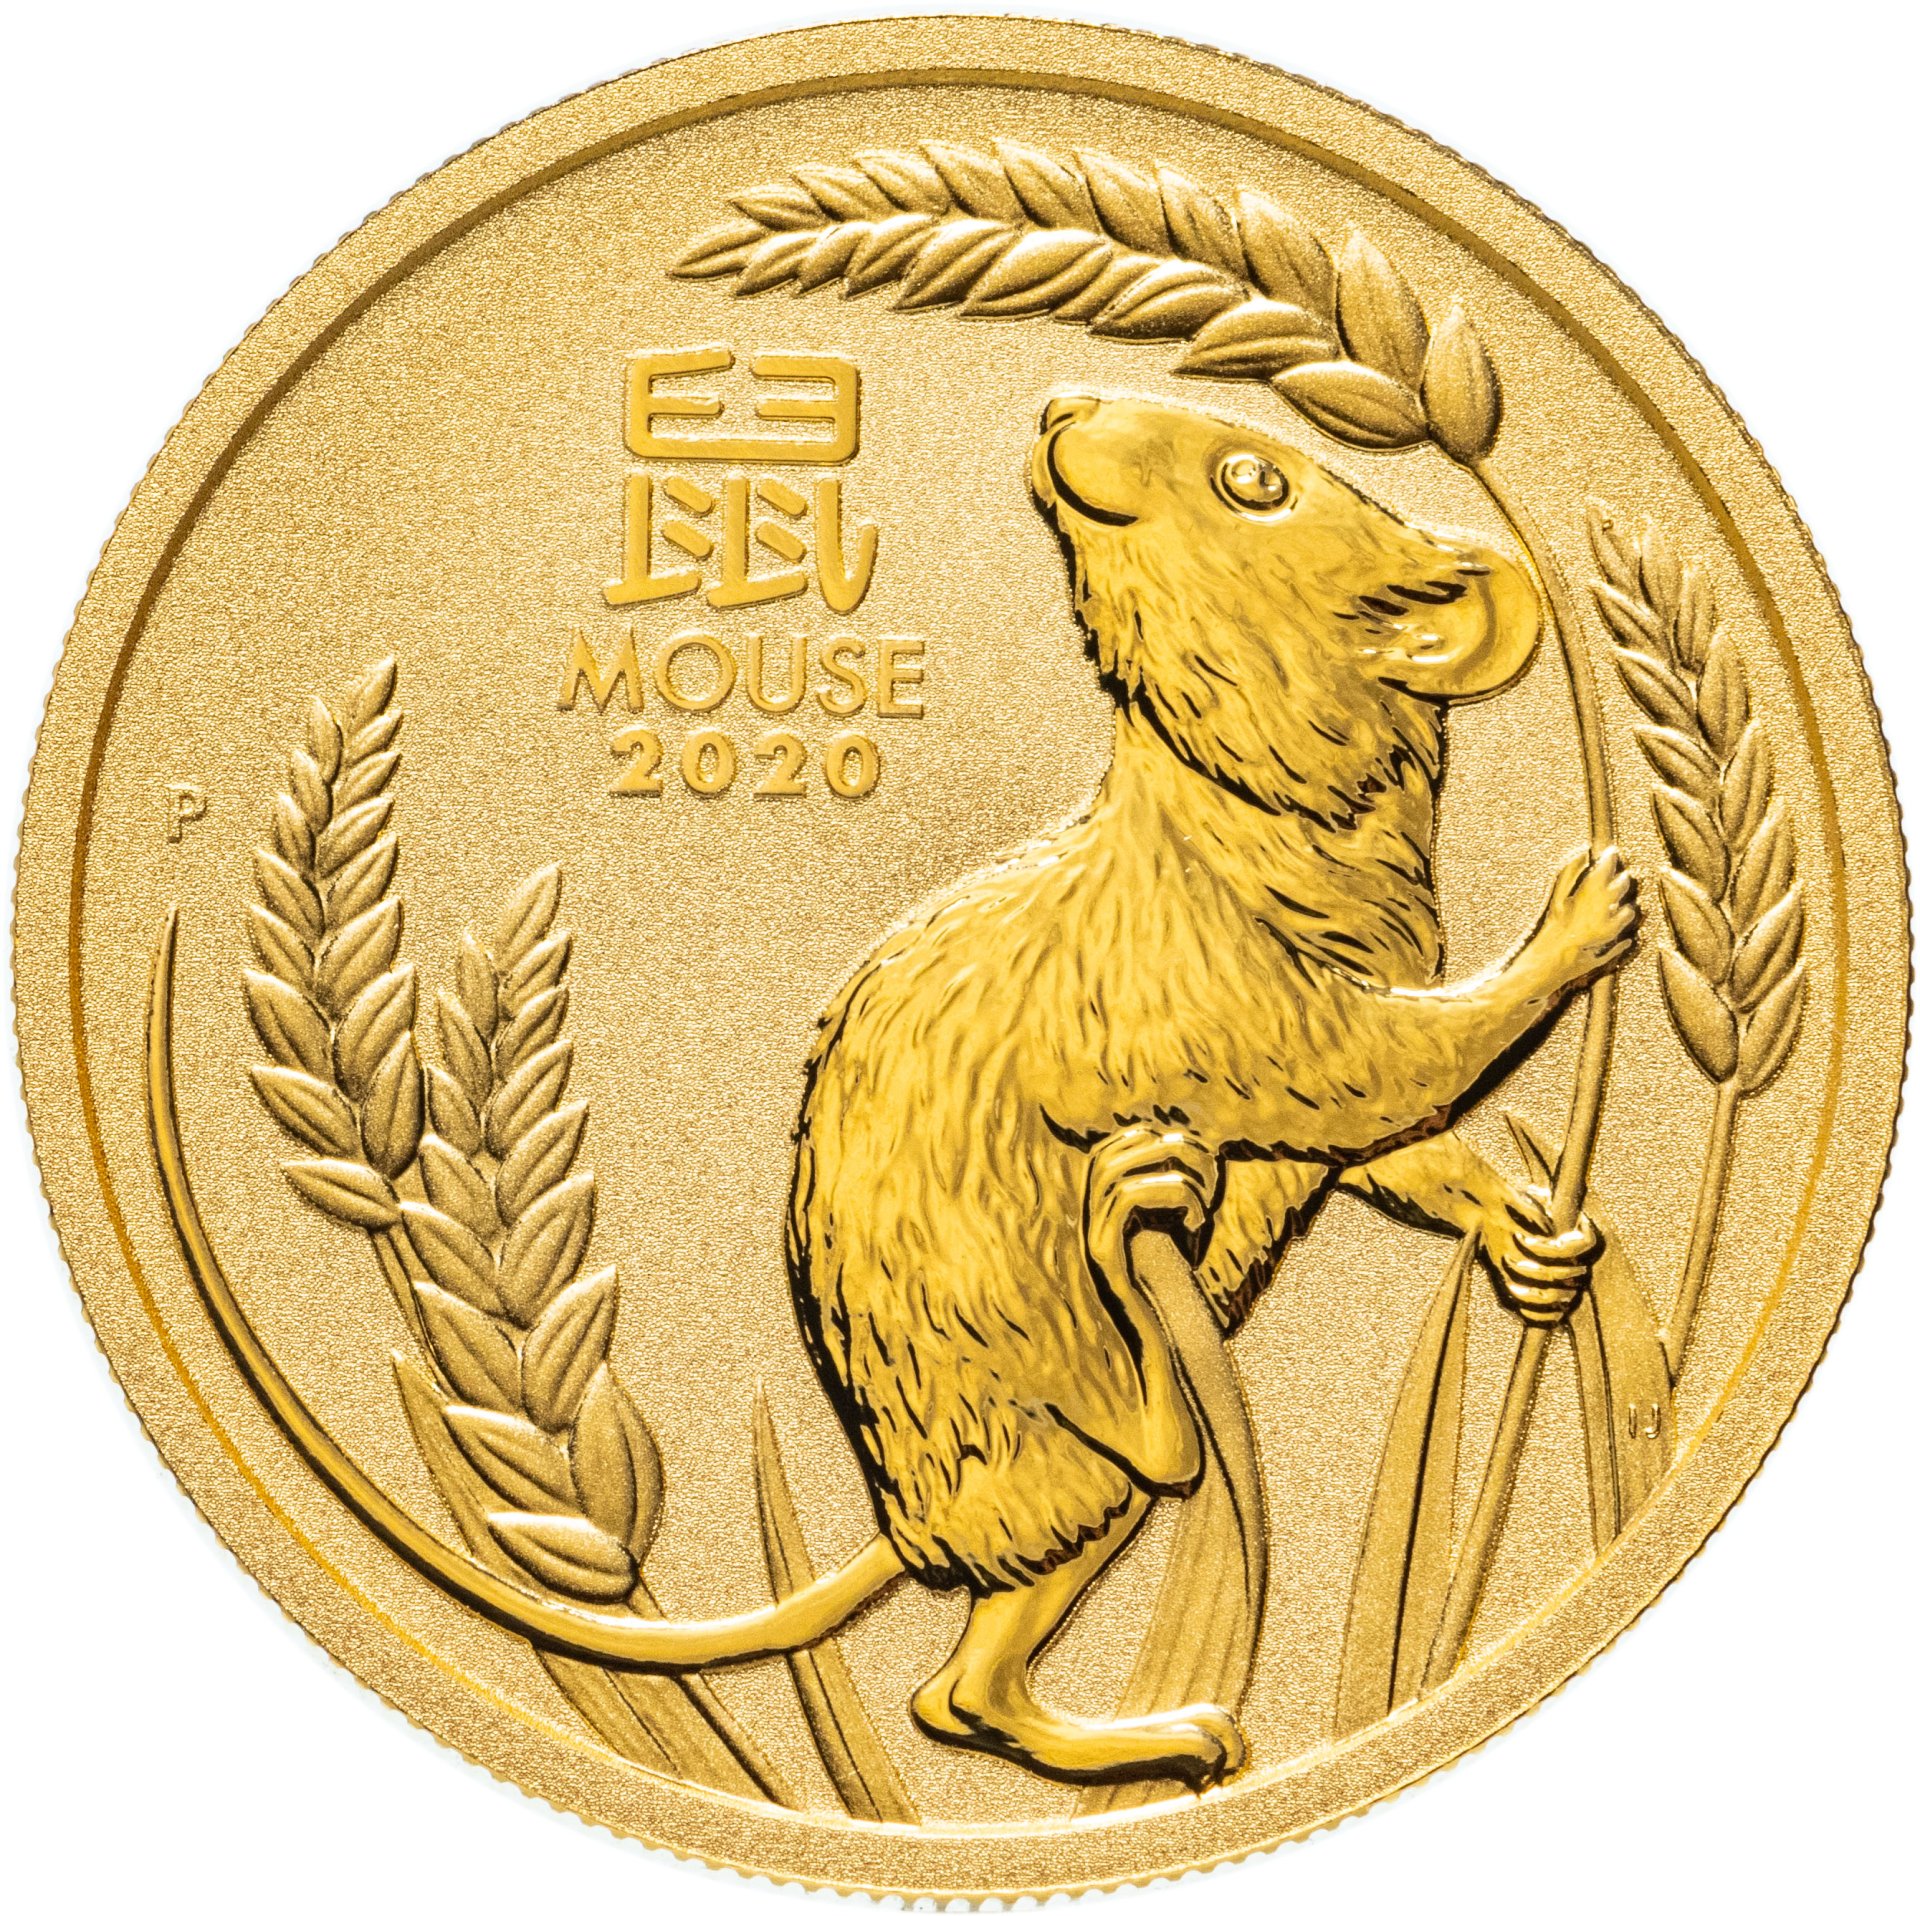 2020 gold. Gold монеты год крысы 2020. Золотая монета Лунар 2020. Монета Лунар год крысы 2020. Золотые монеты австралийские Лунар.